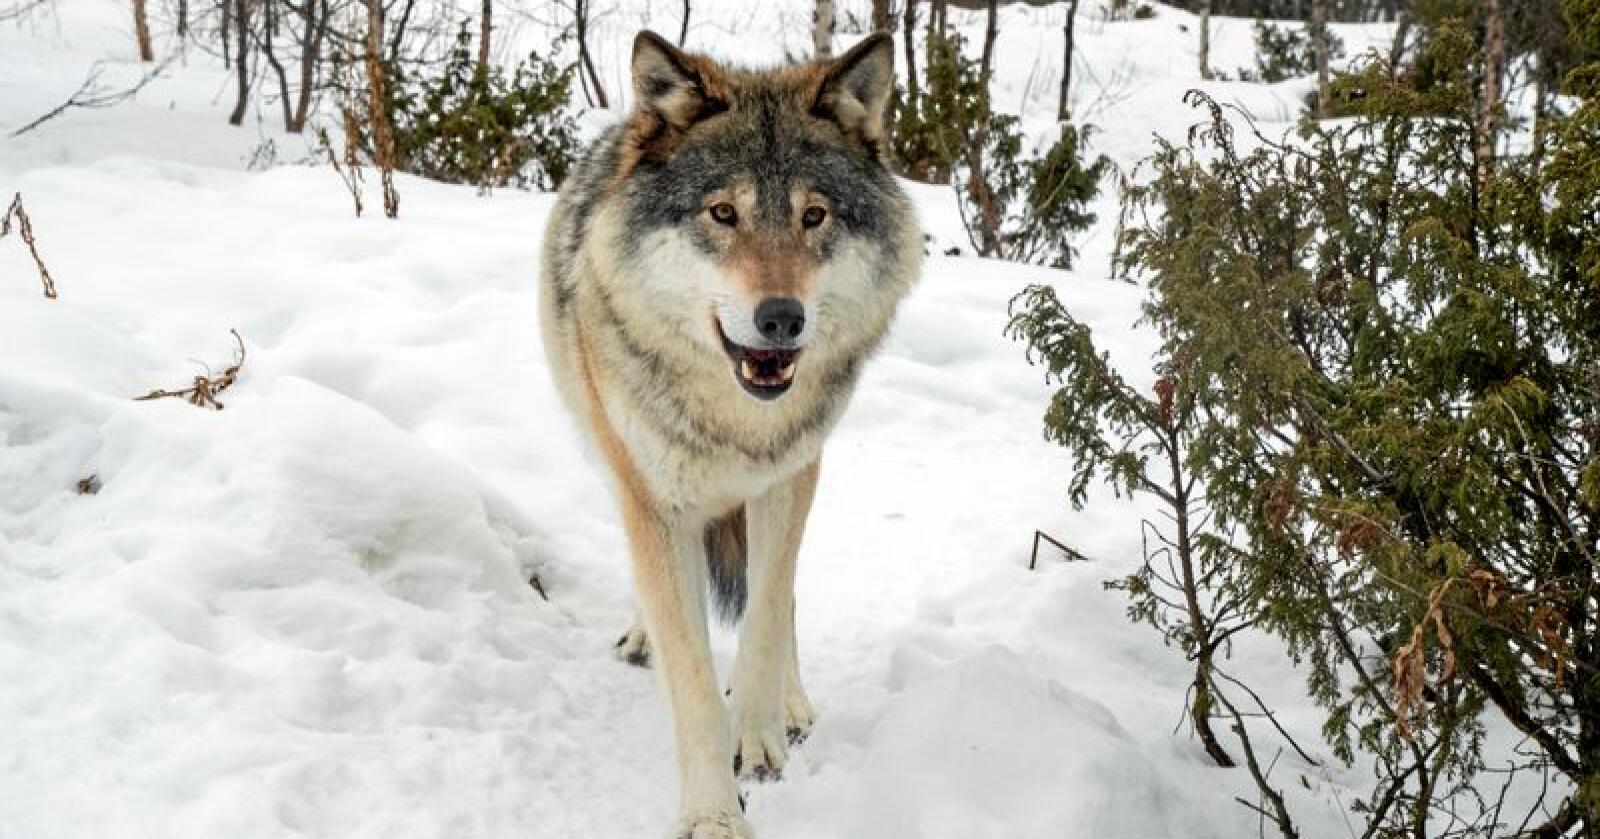 Det er ingen grunn til å hate ulven, den følger bare instinktene sine, skriver ulvemotstander i dette innlegget. Foto: NTB scanpix